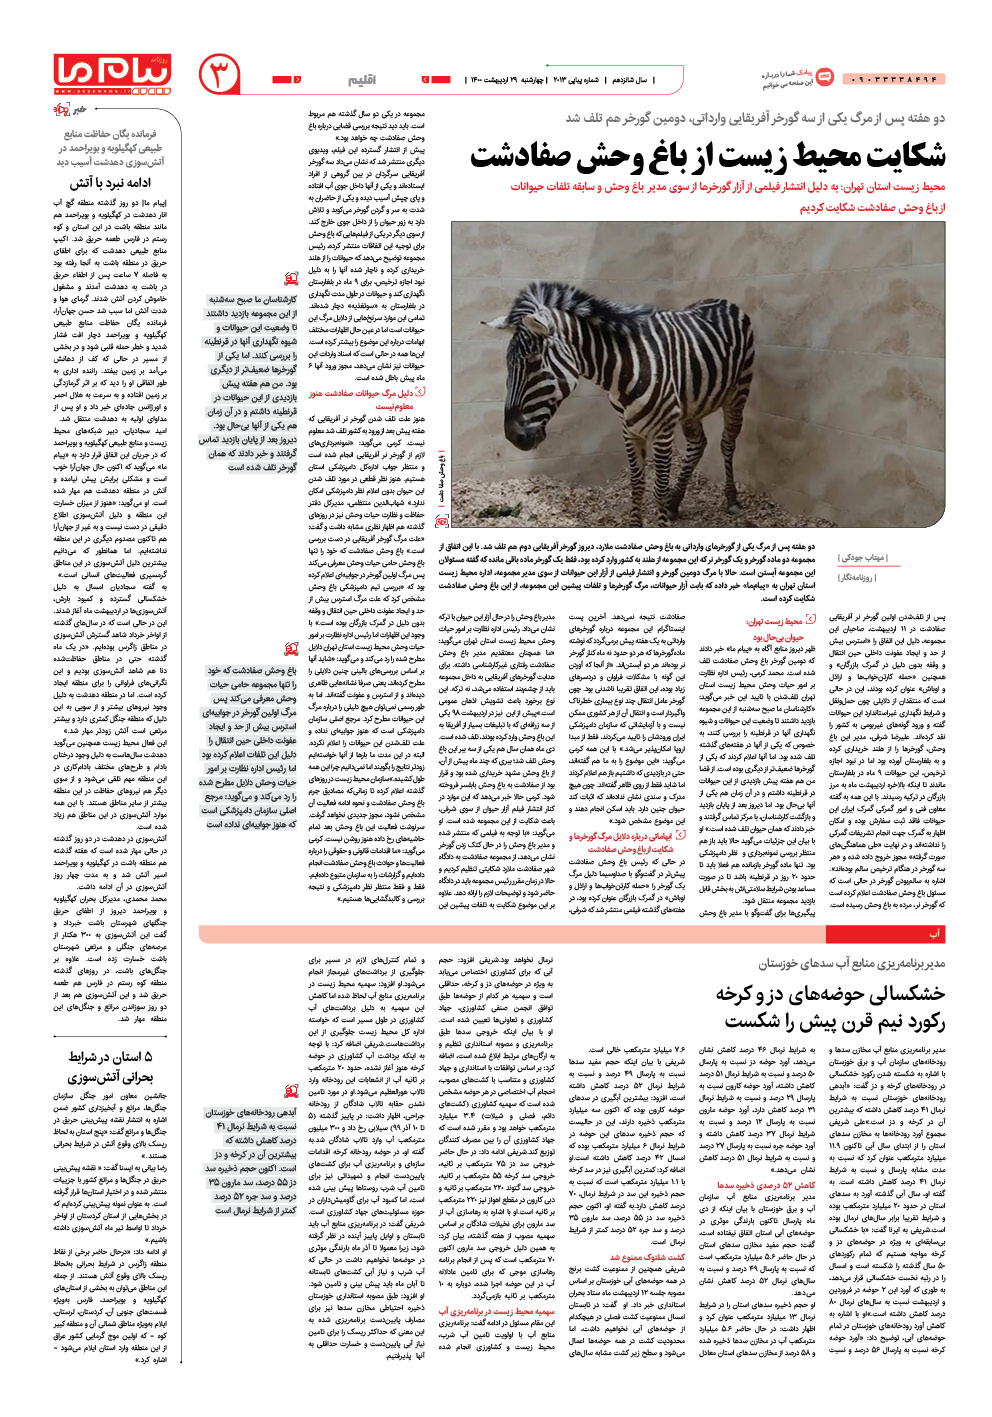 صفحه اقلیم شماره 2013 روزنامه پیام ما